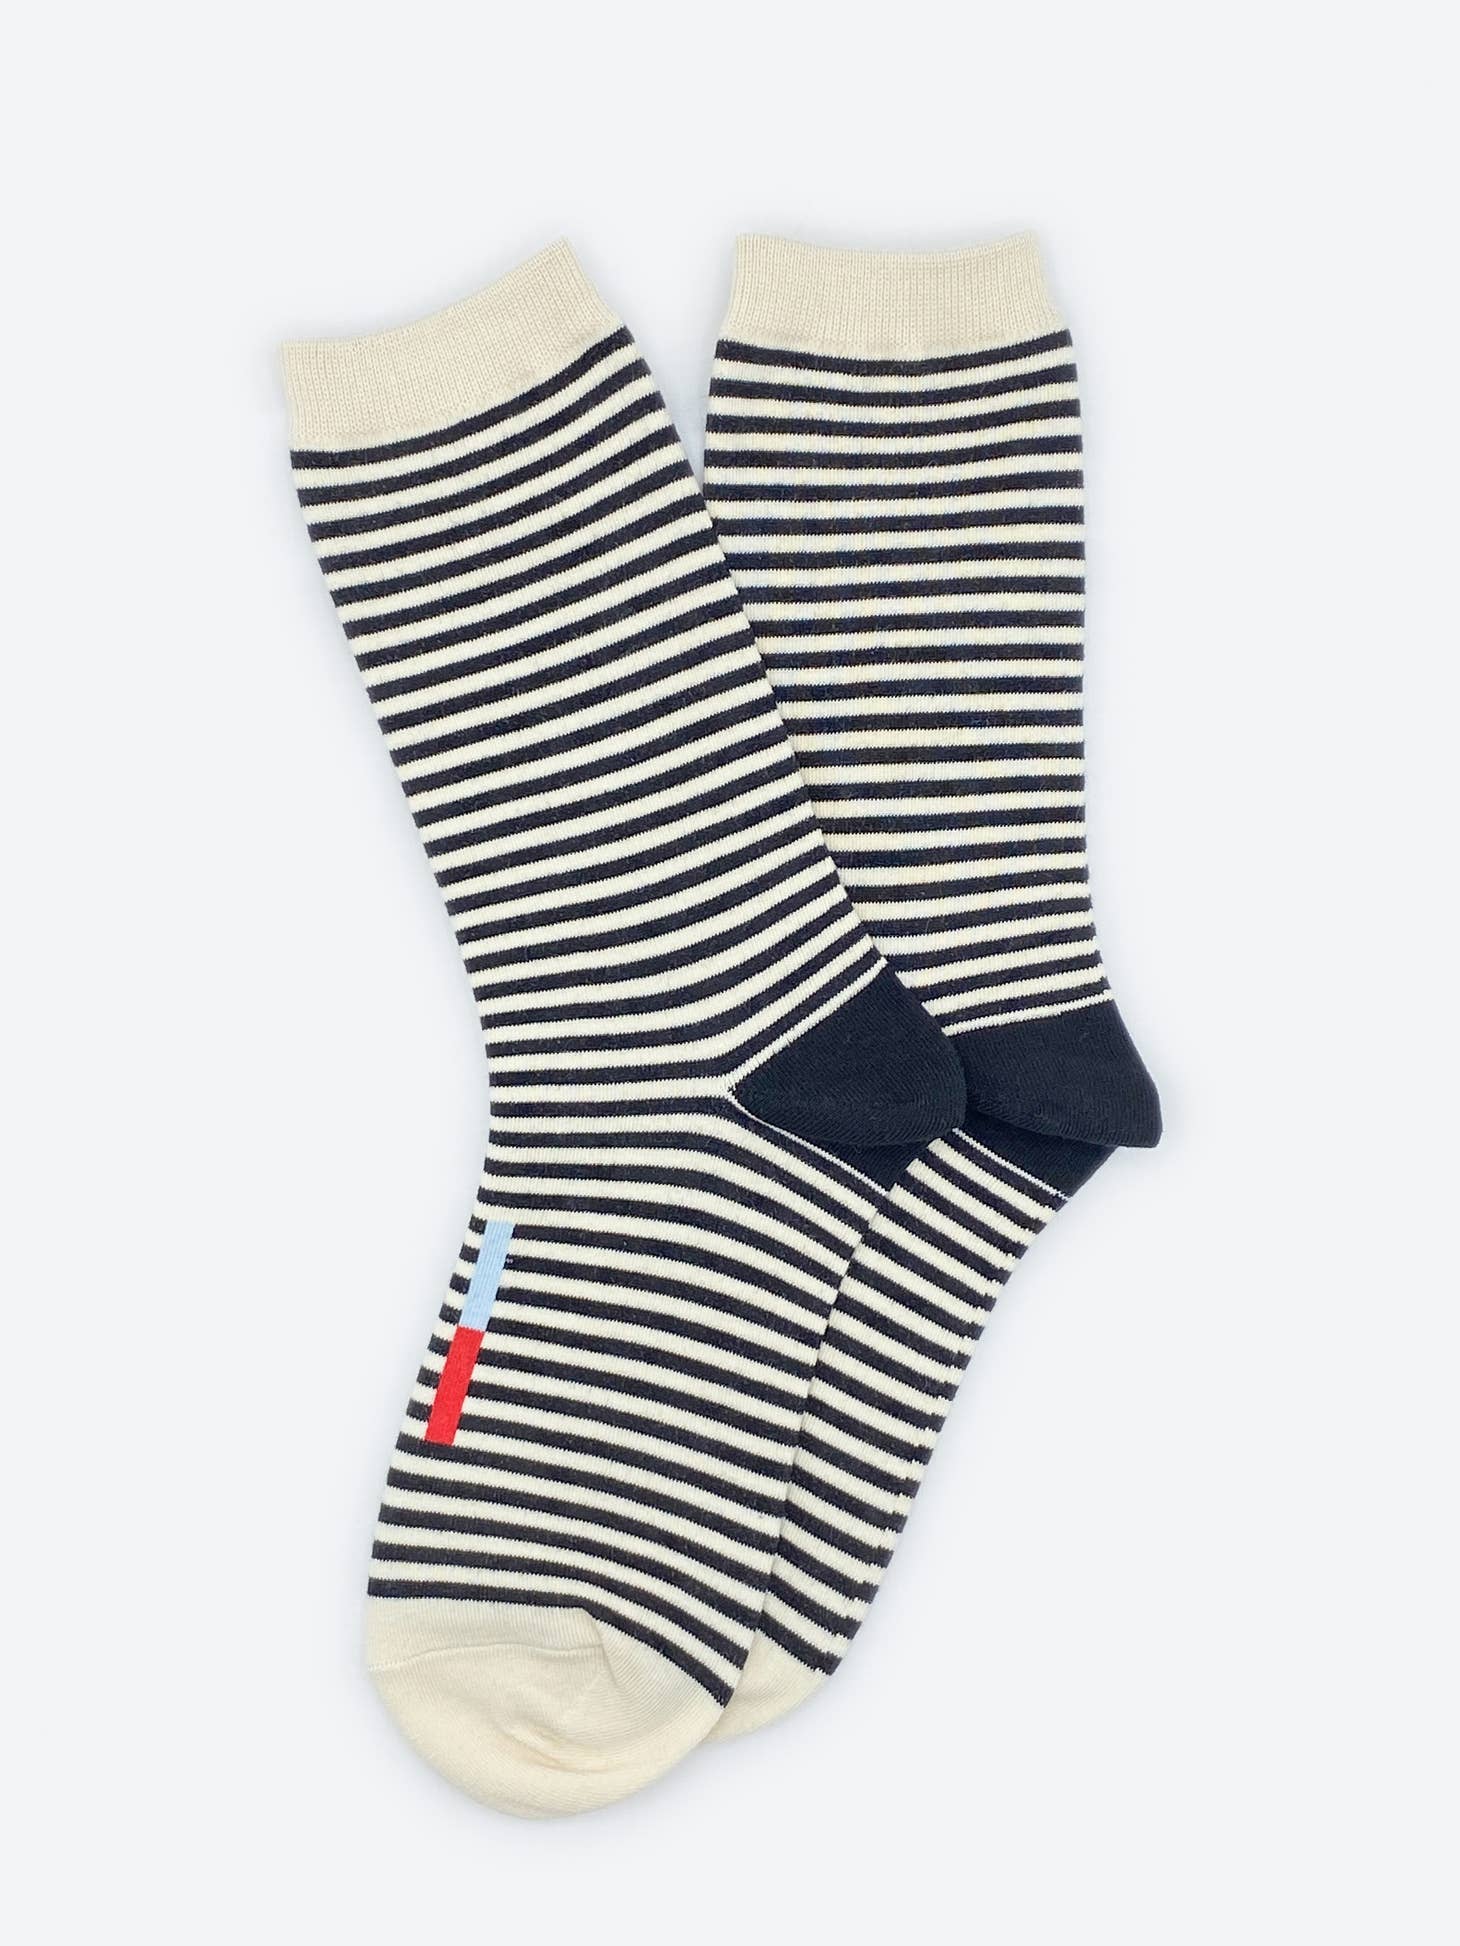 Hooray Sock Co. Cole Socks, Men's